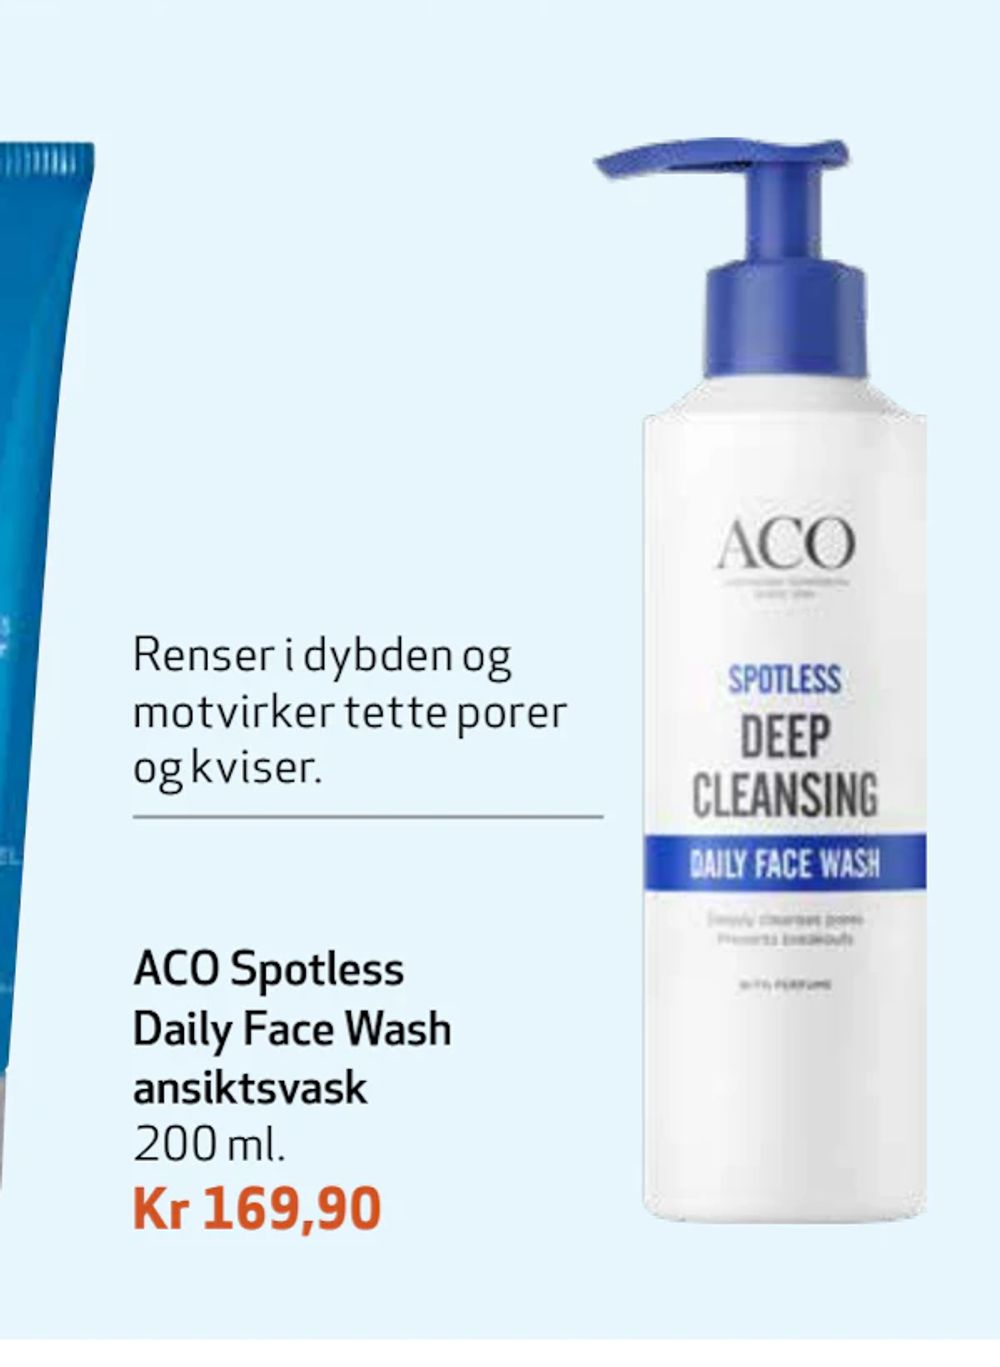 Tilbud på ACO Spotless Daily Face Wash ansiktsvask fra Apotek 1 til 169,90 kr